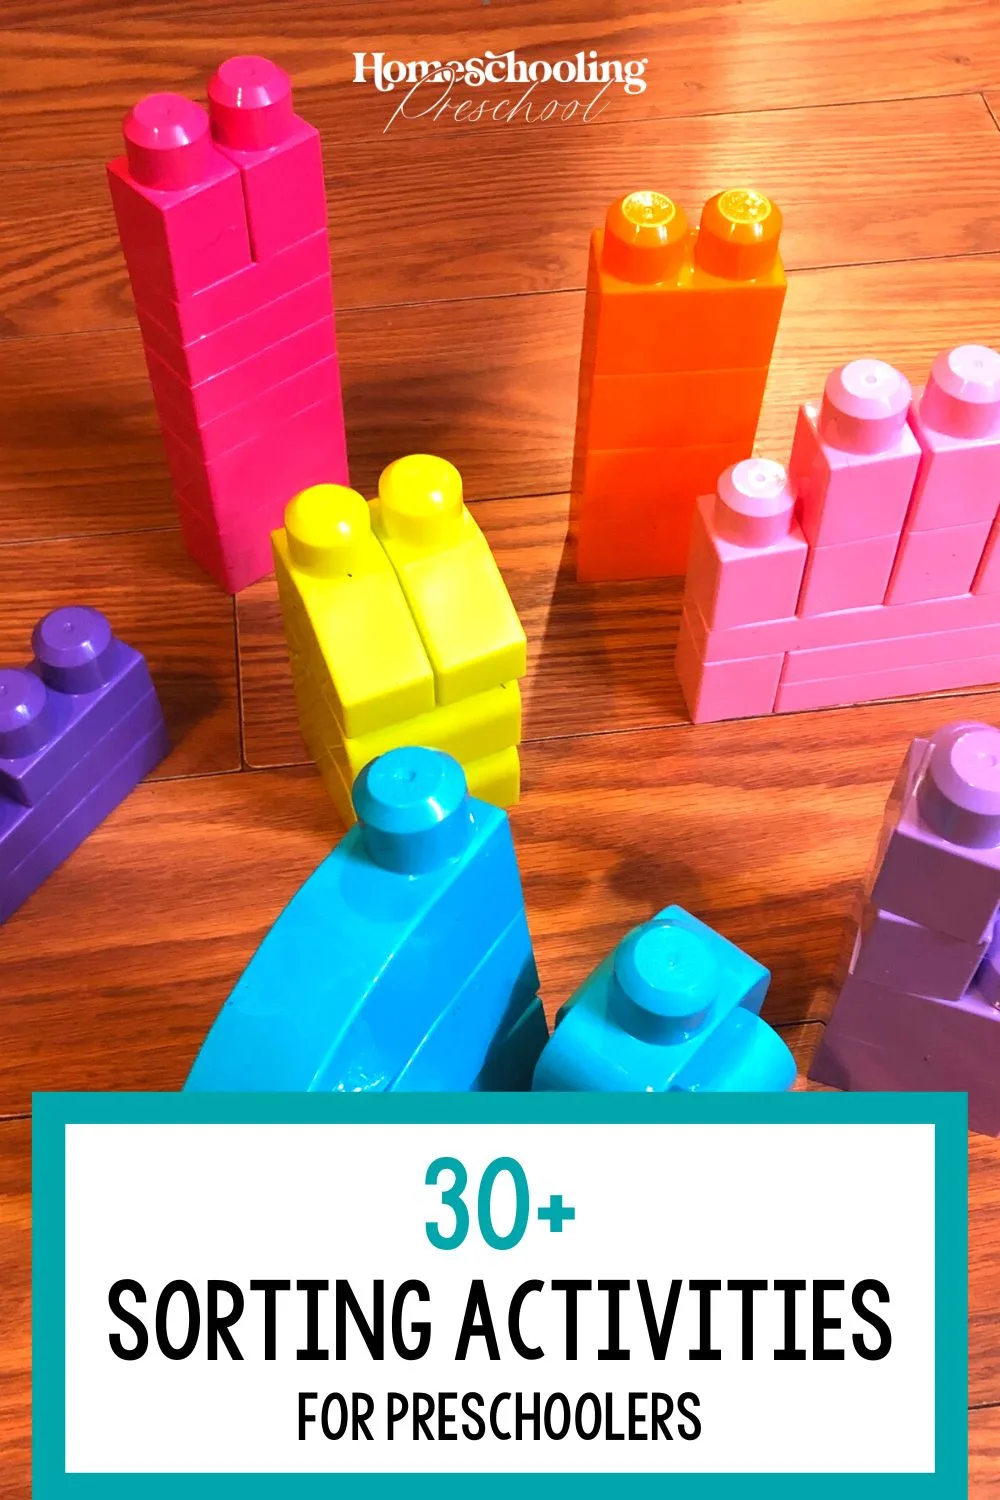 30+ Sorting Activities for Preschoolers